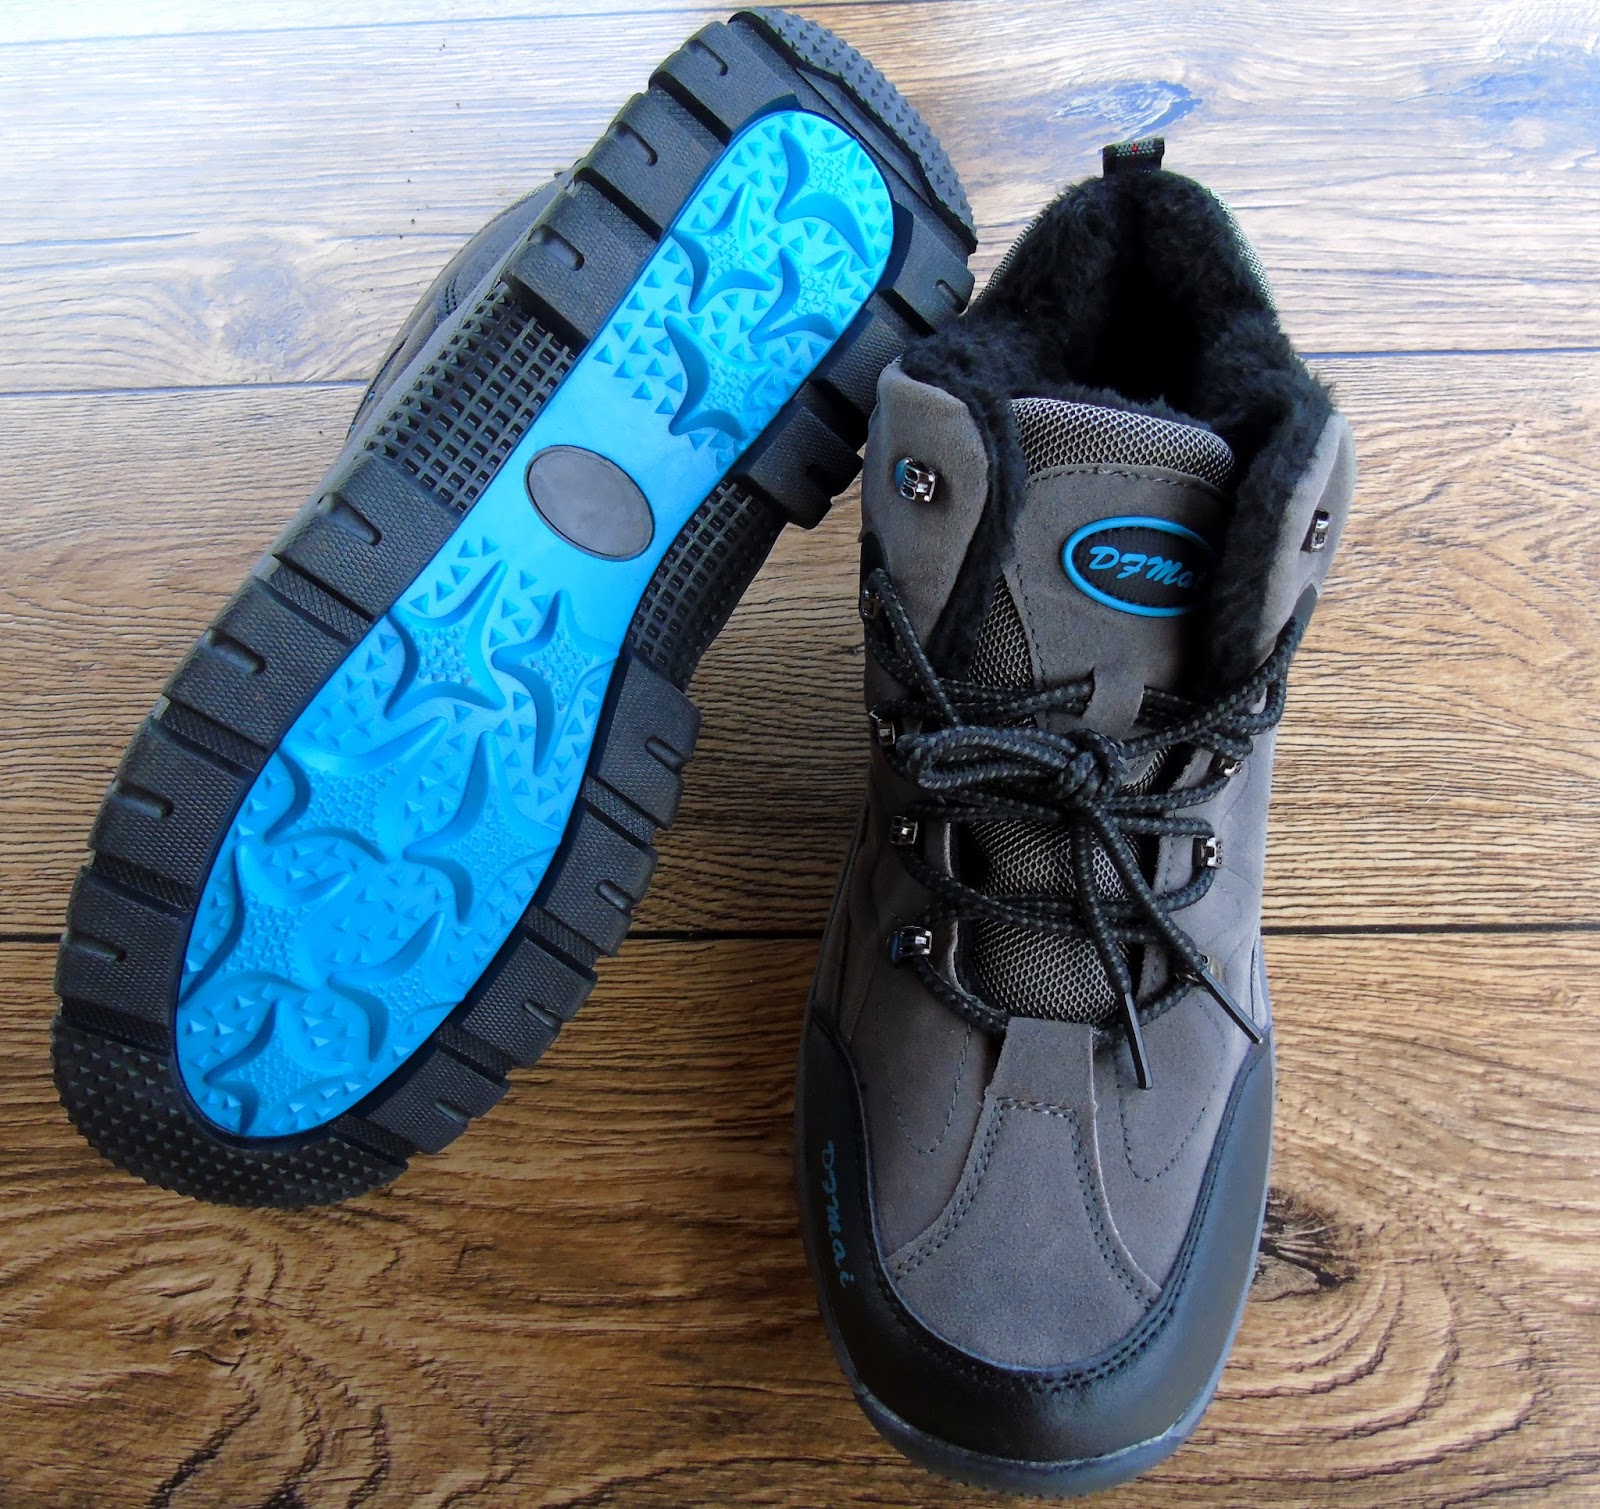 Blog testerski: NEWCHIC - Ocieplane buty trekkingowe dla Niego ;)